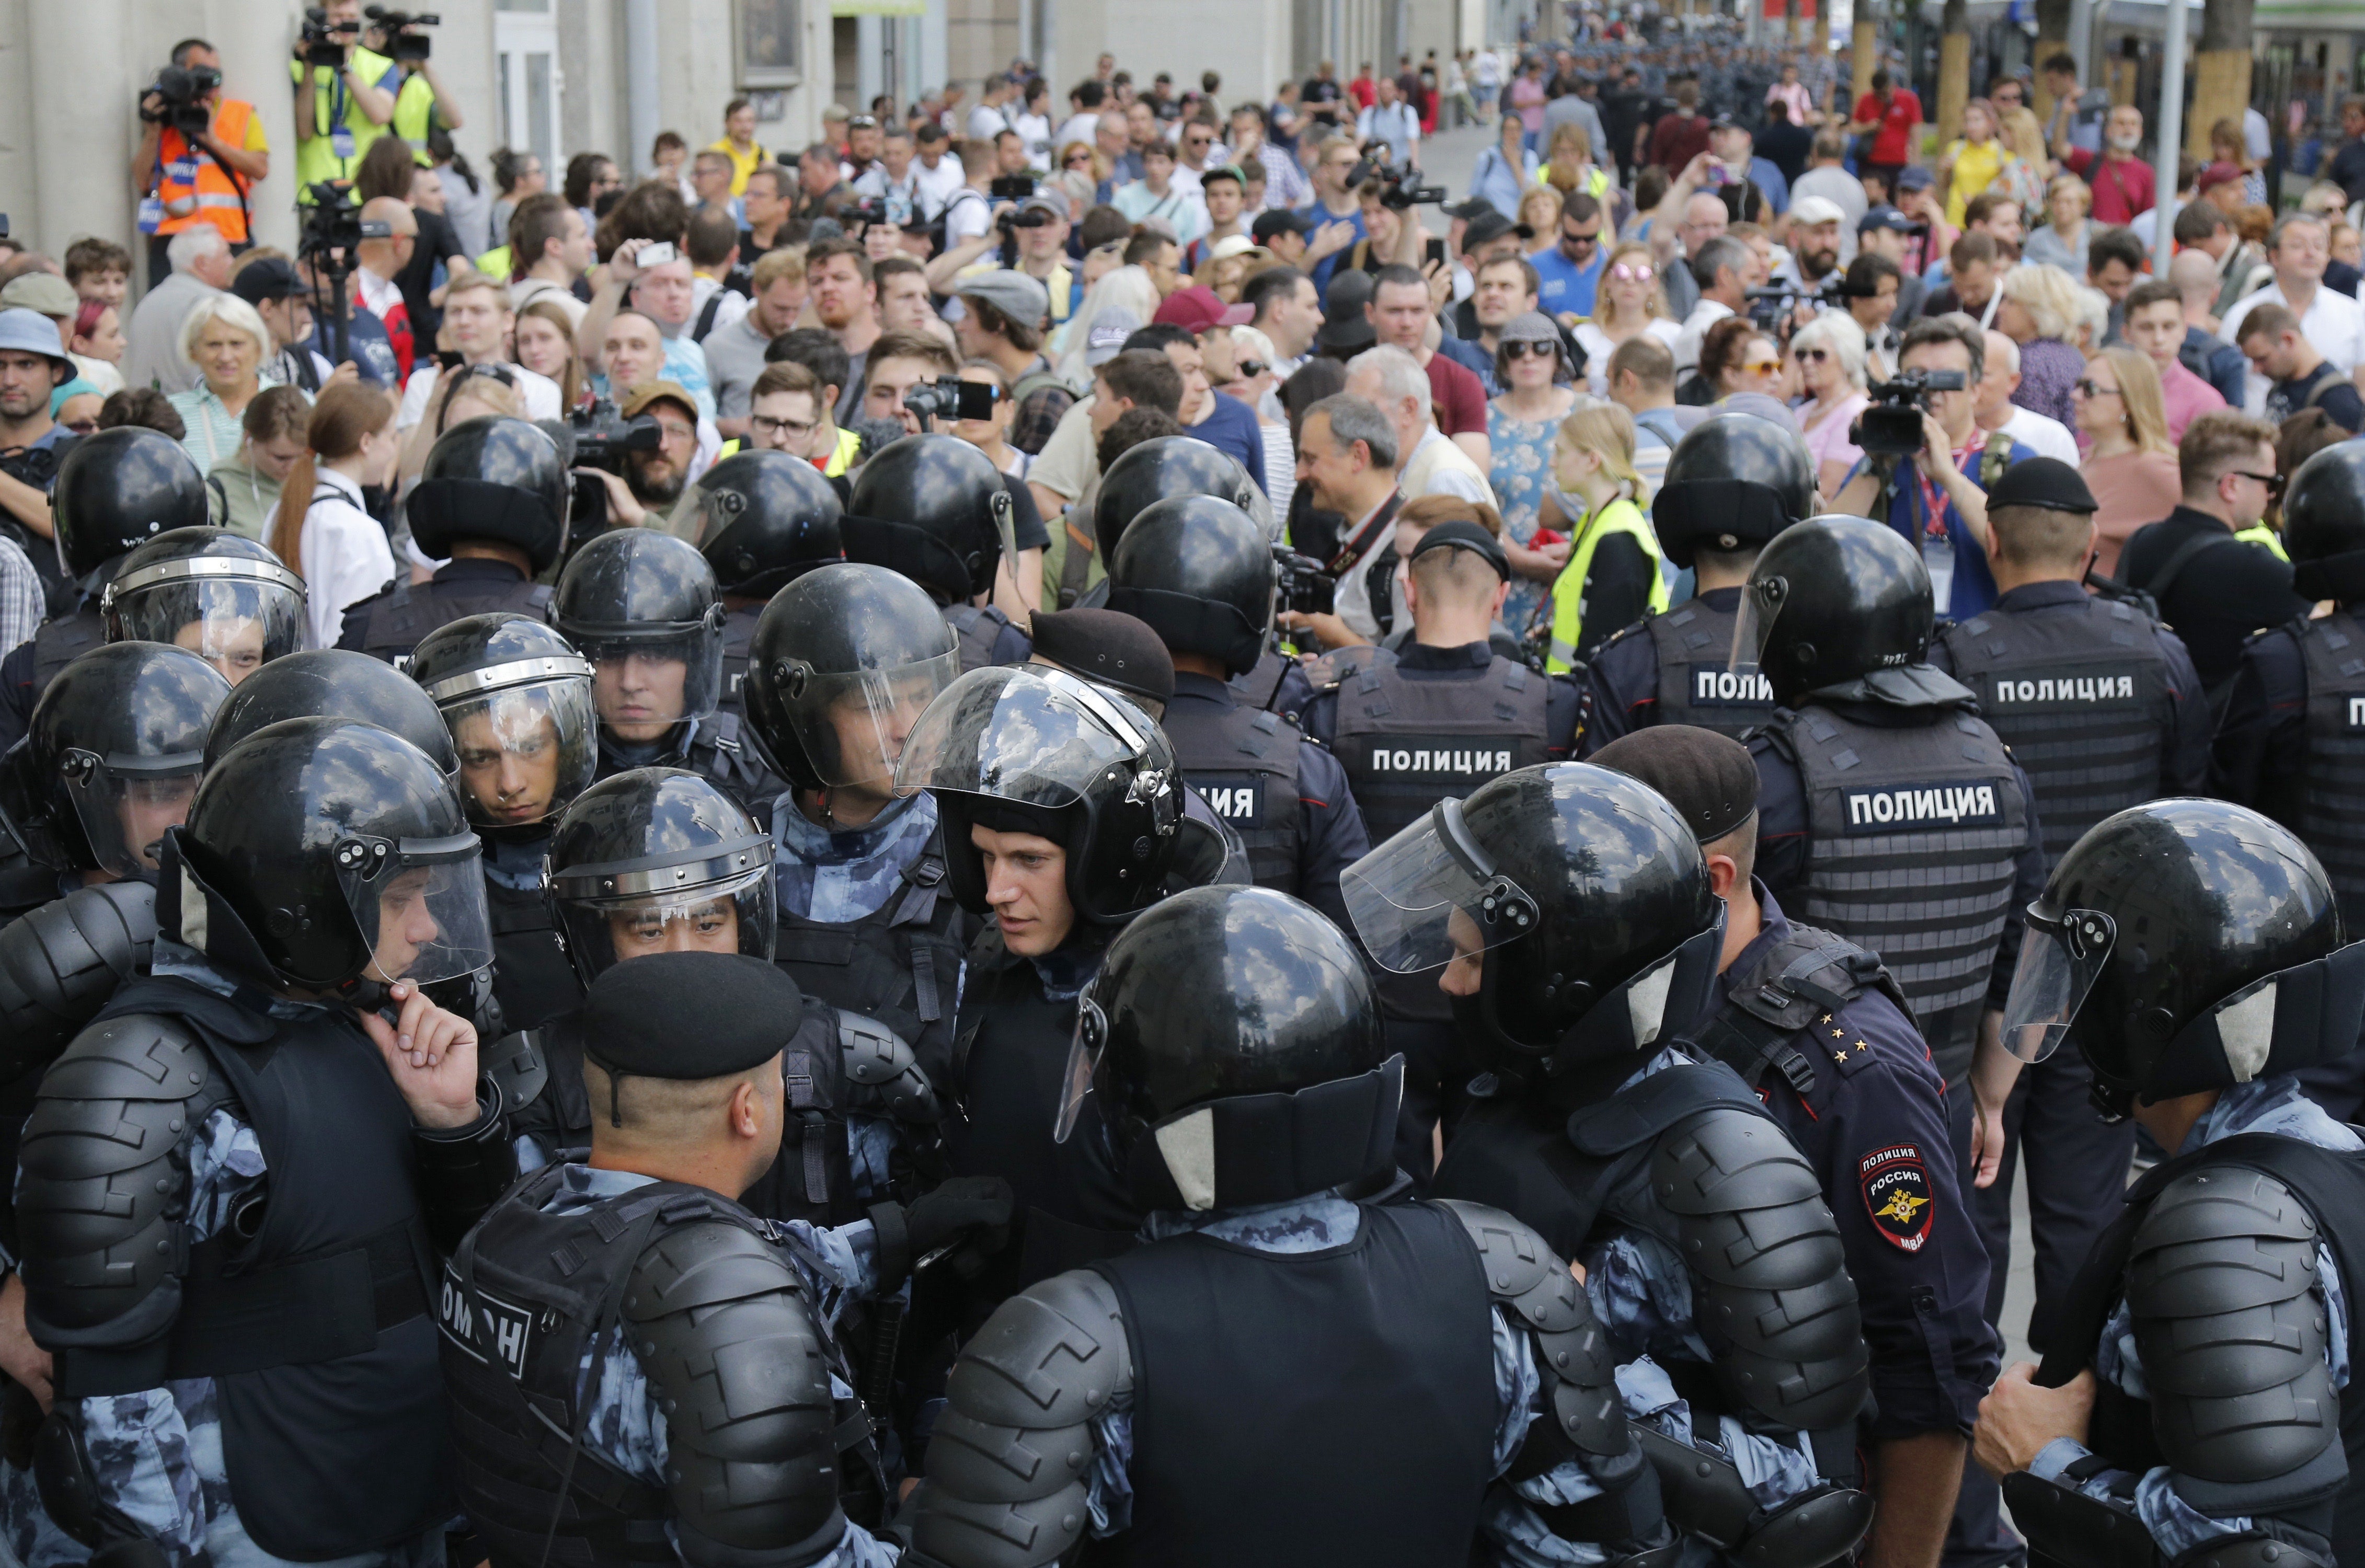 Митинг доклад. Полиция в Москве разгоняет демонстрантов. Митинг в Москве 27 июля 2019 ОМОН. Толпа полиции.